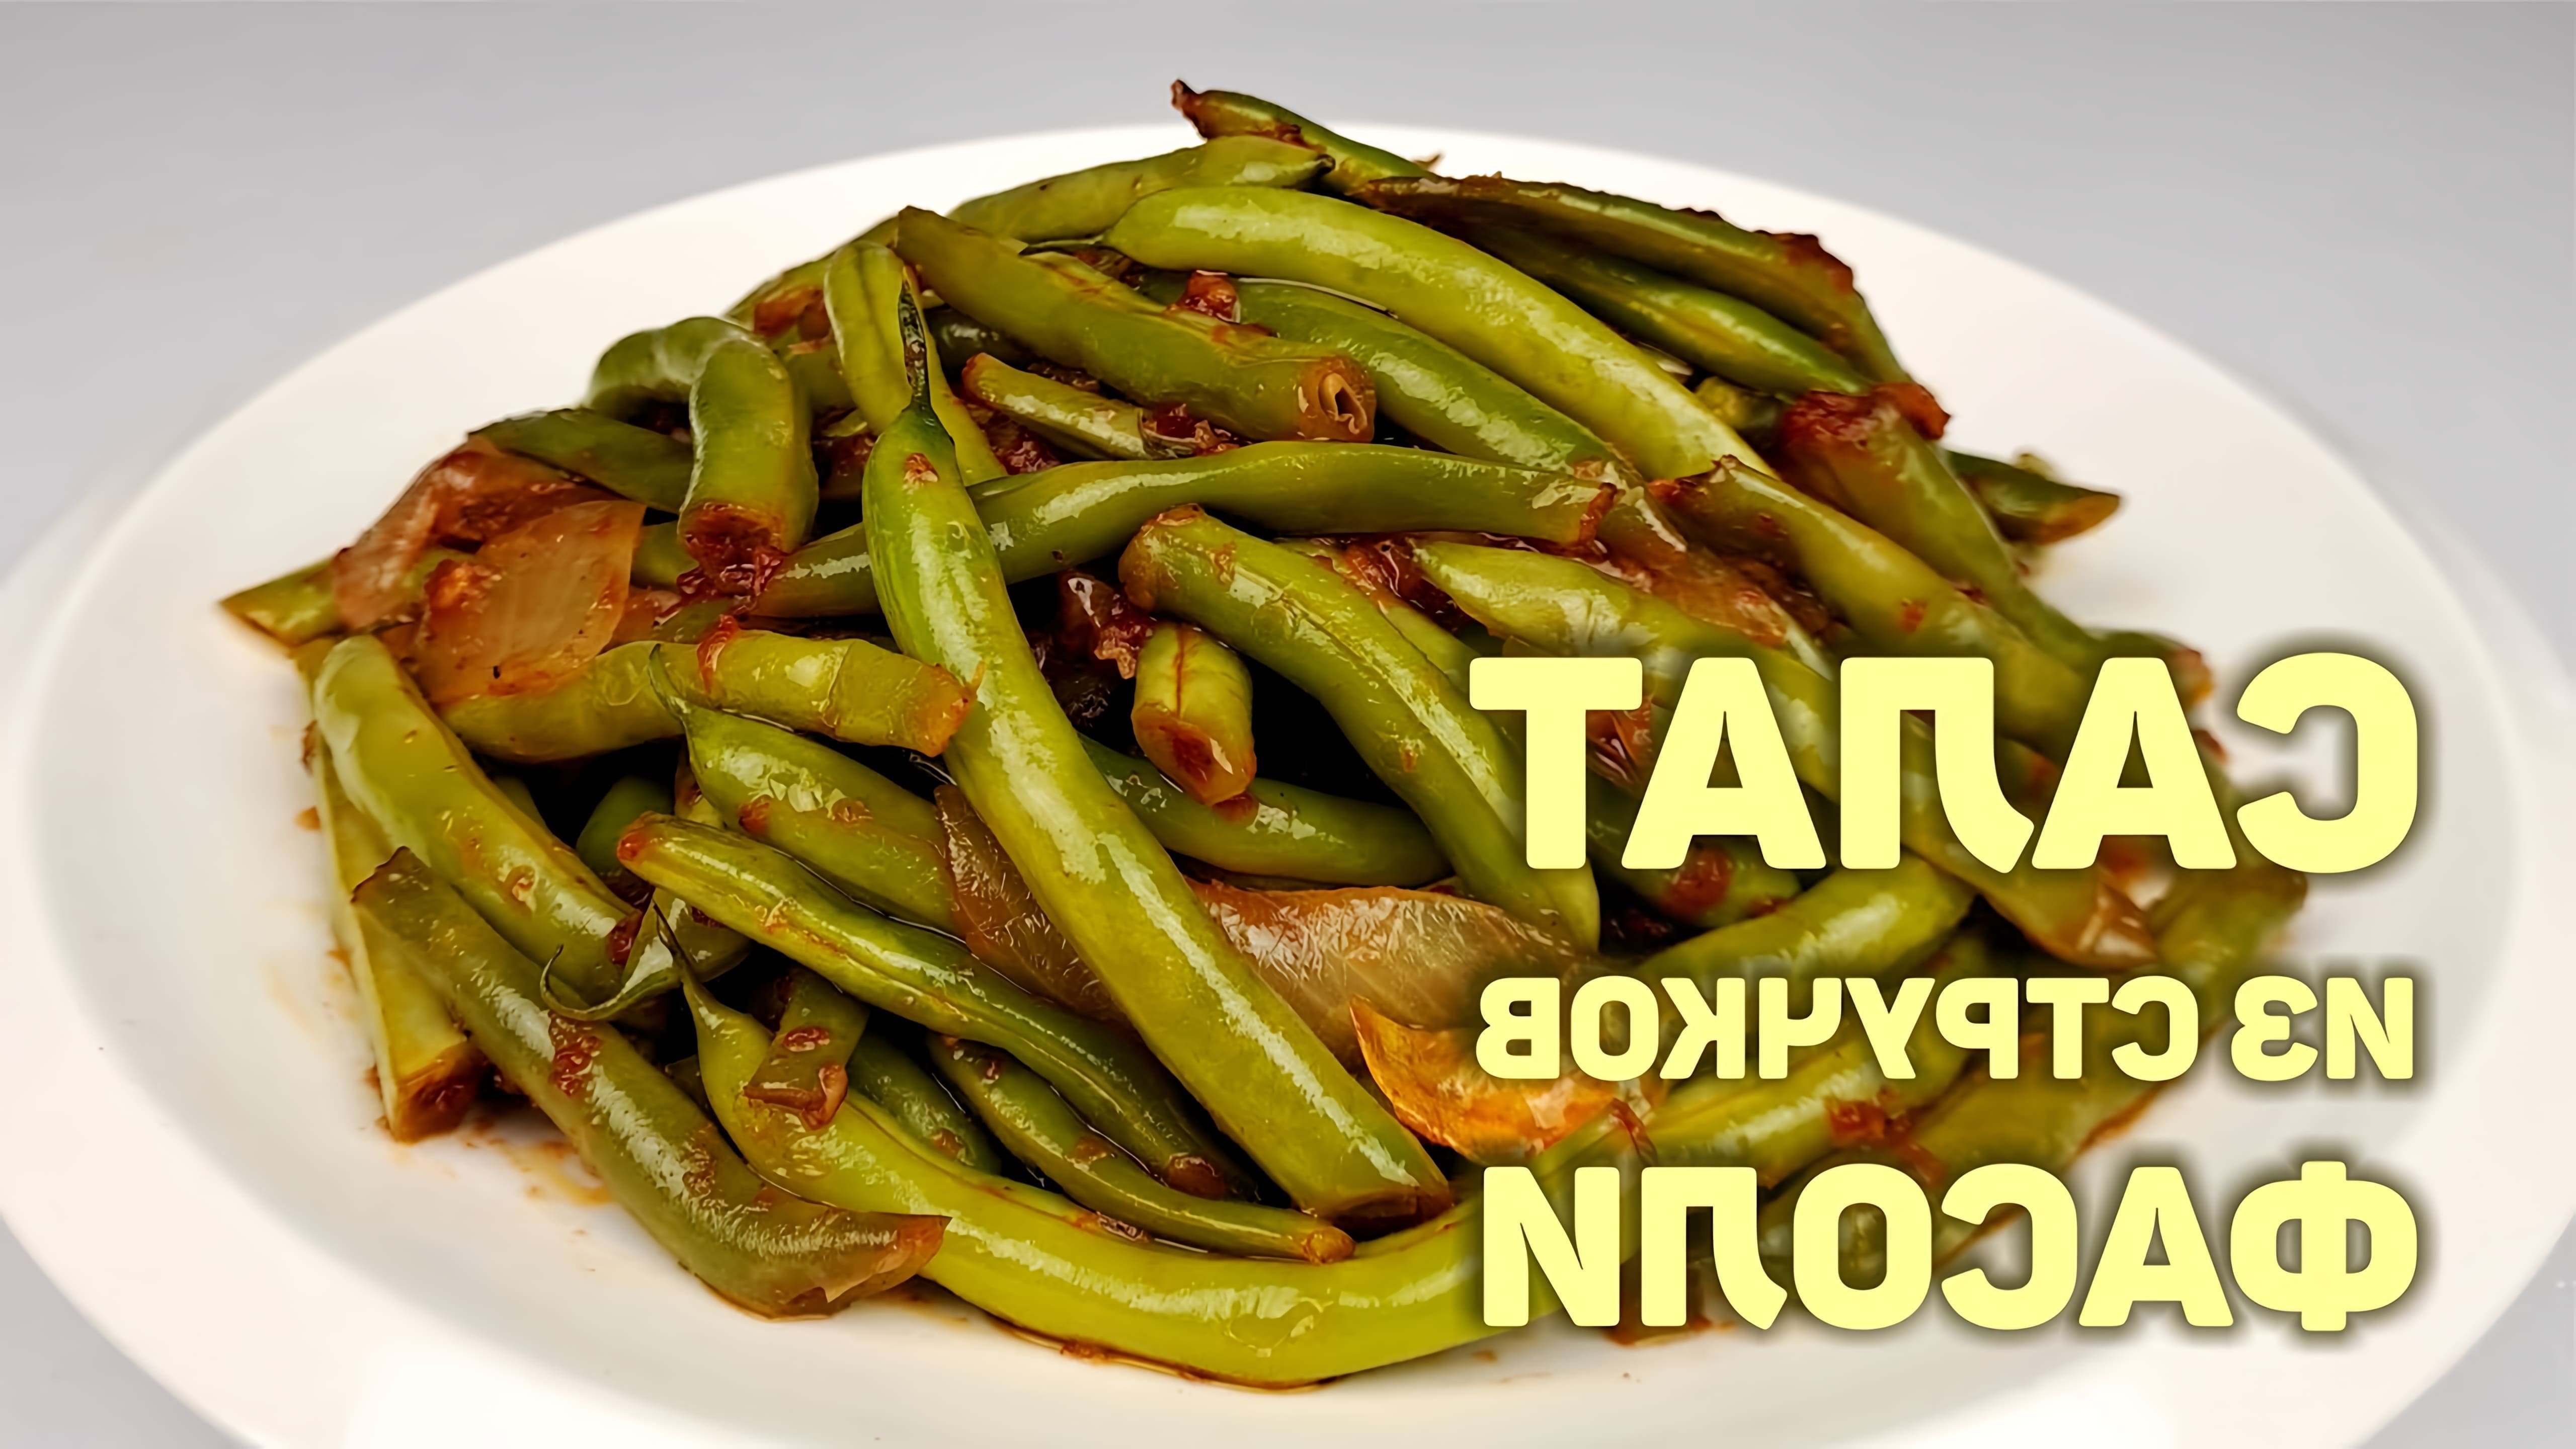 В этом видео демонстрируется процесс приготовления салата из стручковой фасоли по корейскому рецепту